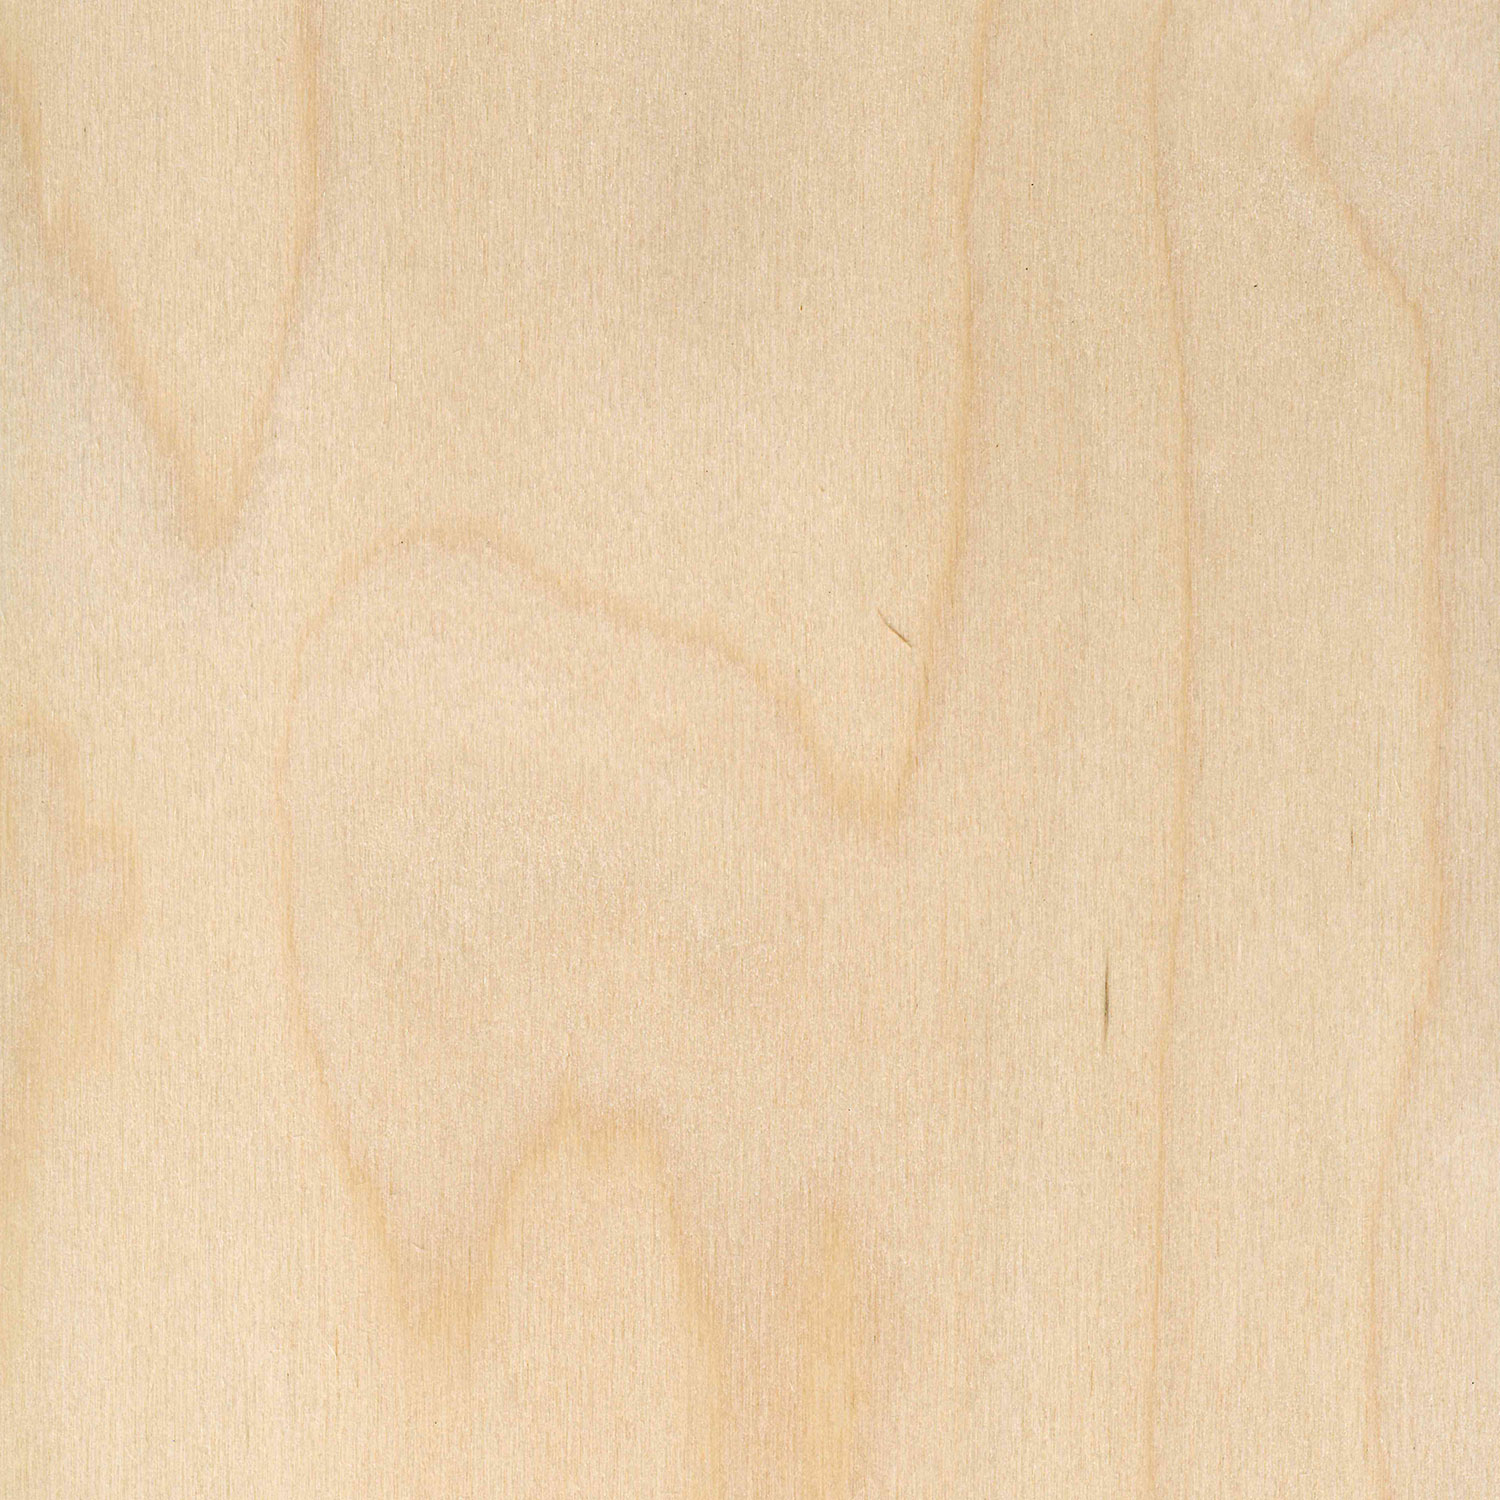 Veneer Birch peeled, rotary cut veneer